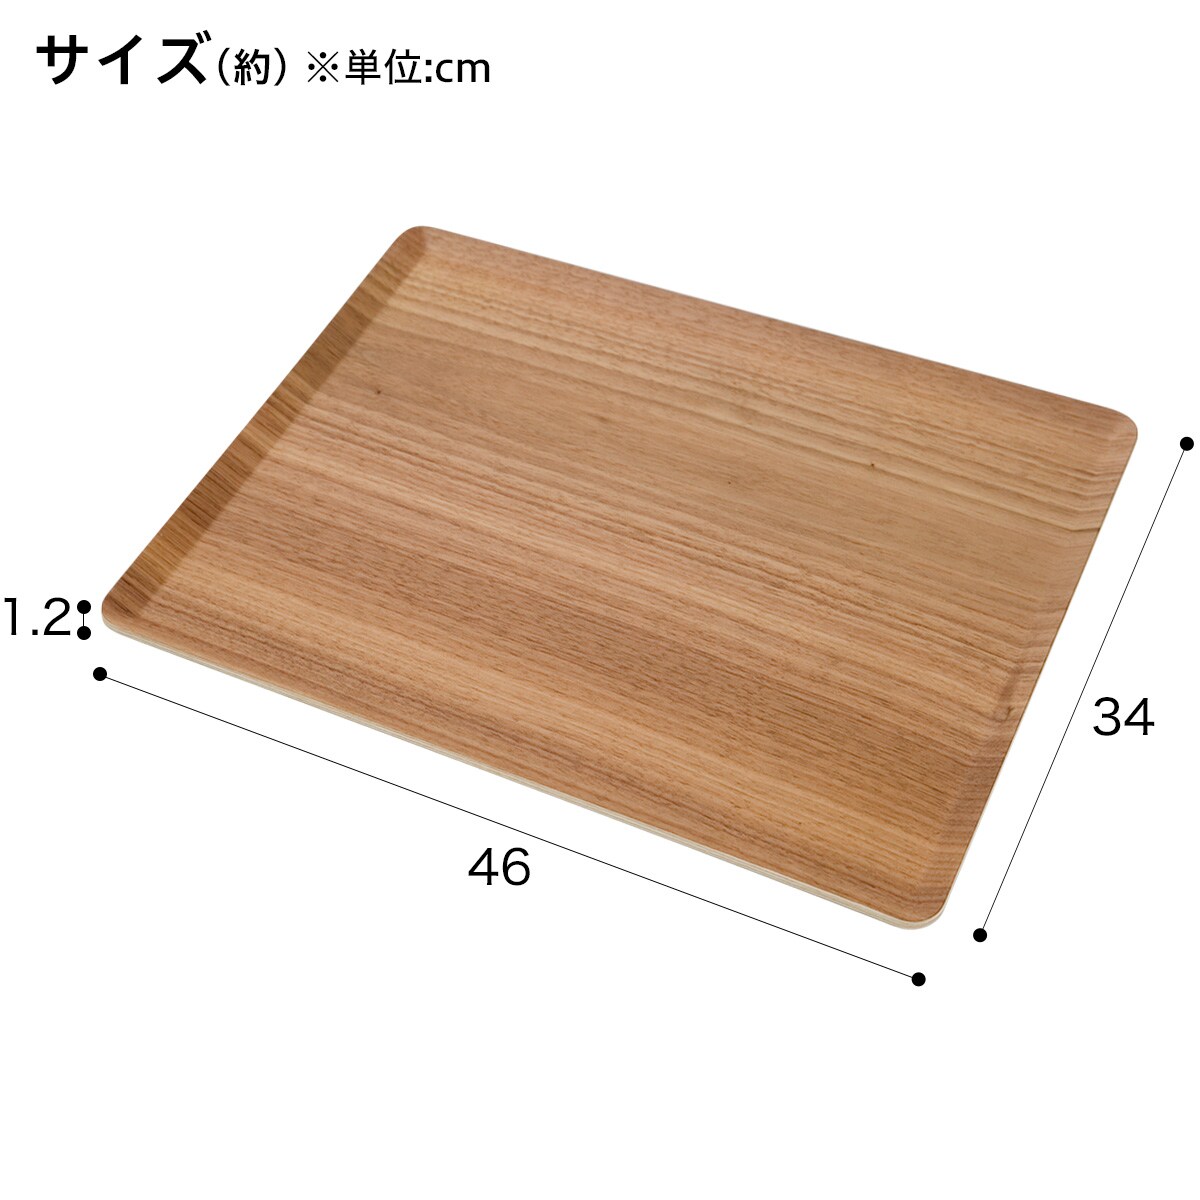 [幅46cm] すべりにくい木製トレー(L ウォールナット)10枚セット  【・玄関先迄納品】